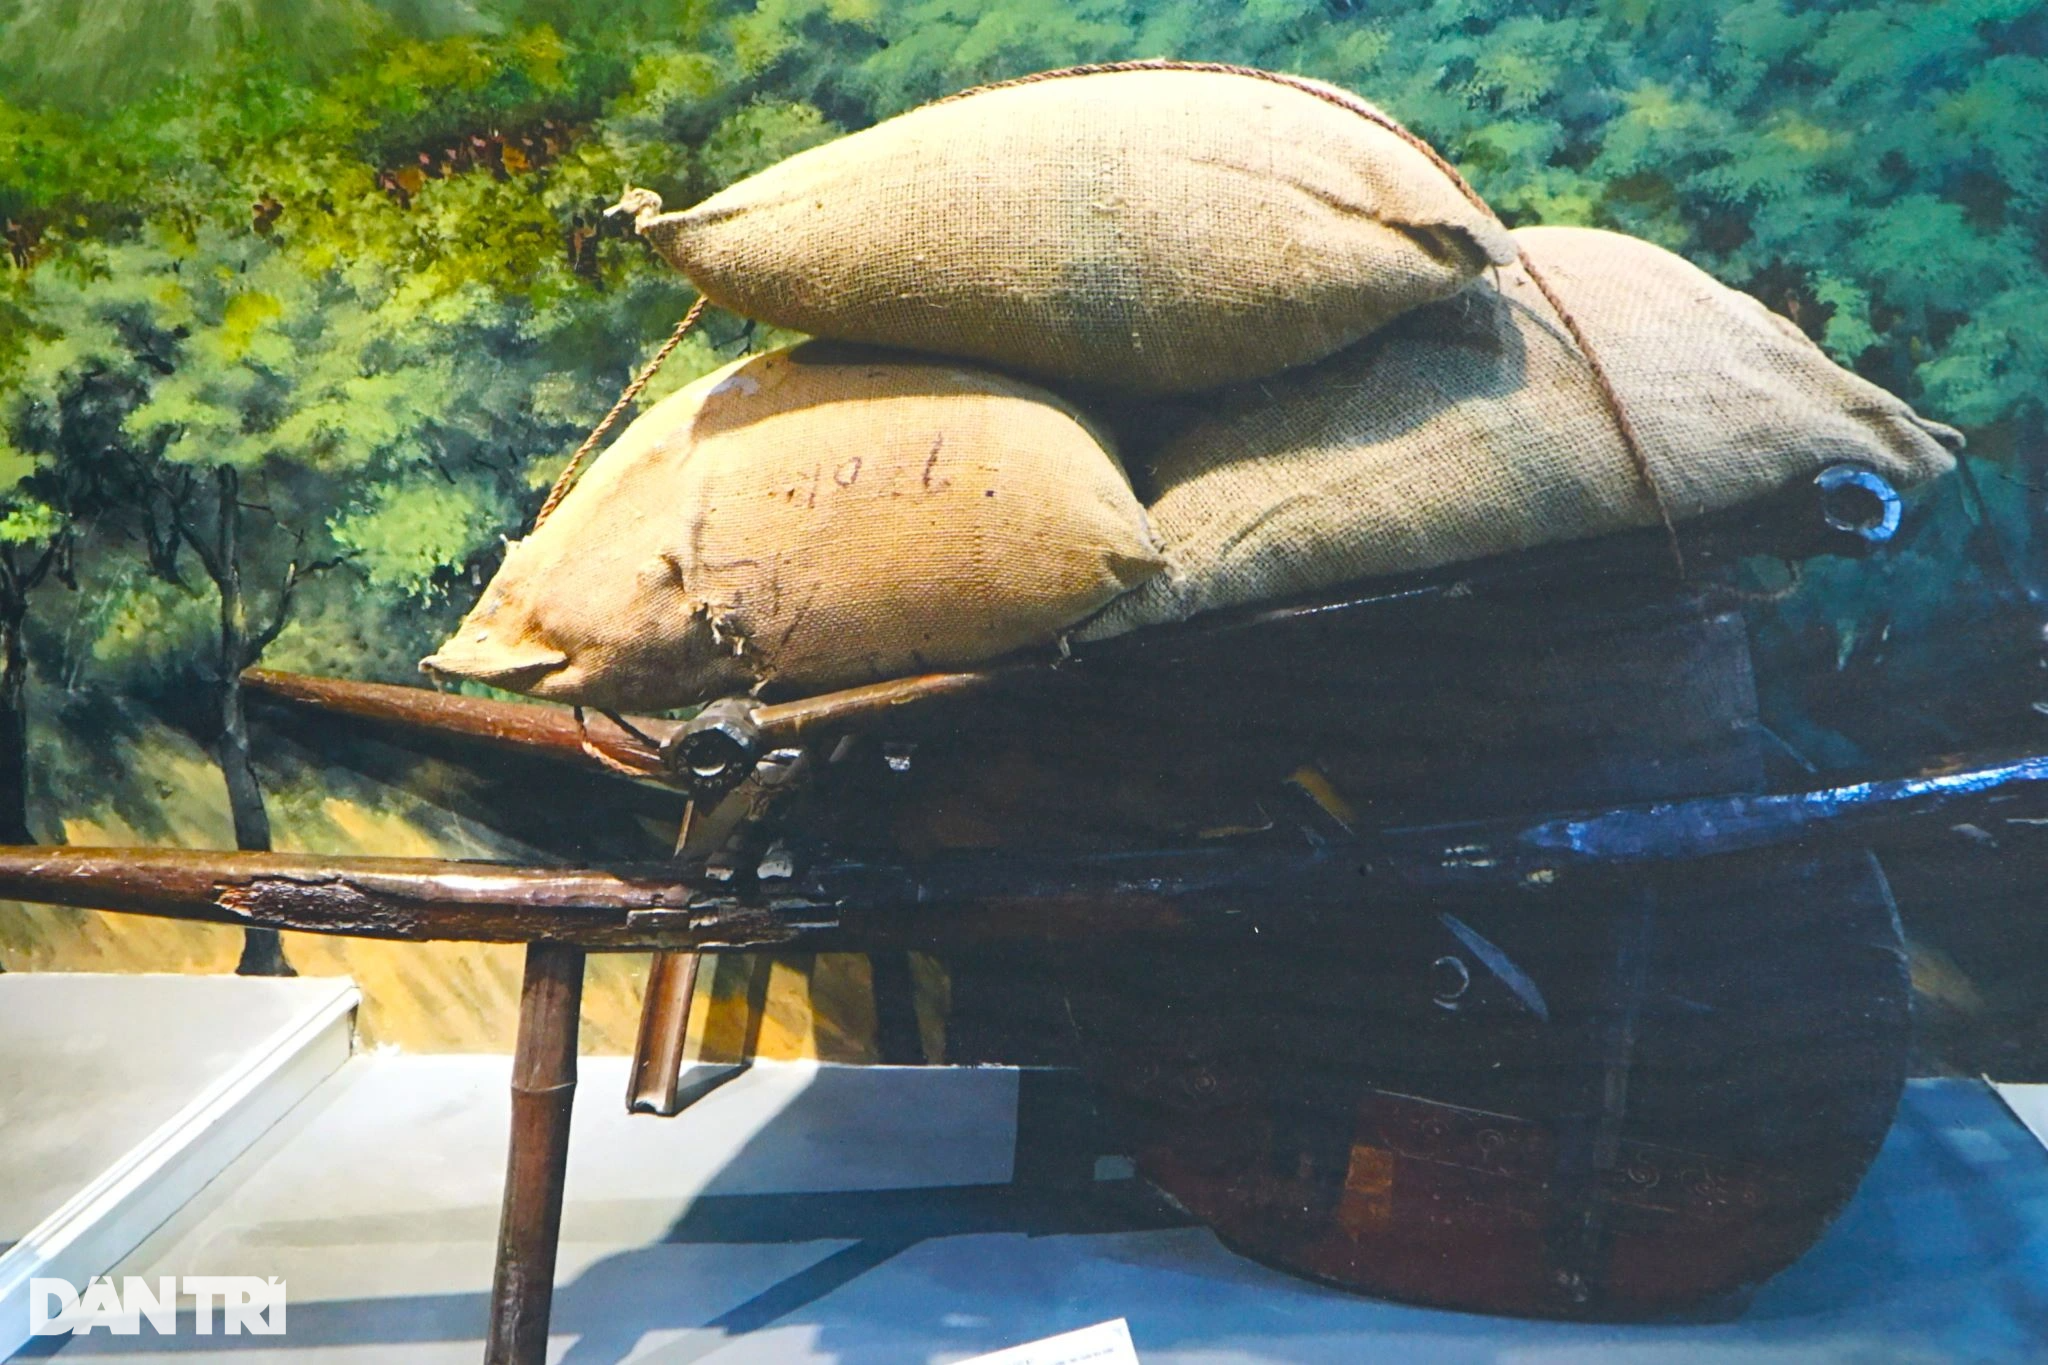 View - Nông dân dỡ bàn thờ làm xe chở lương thực lên chiến trường Điện Biên Phủ | Báo Dân trí